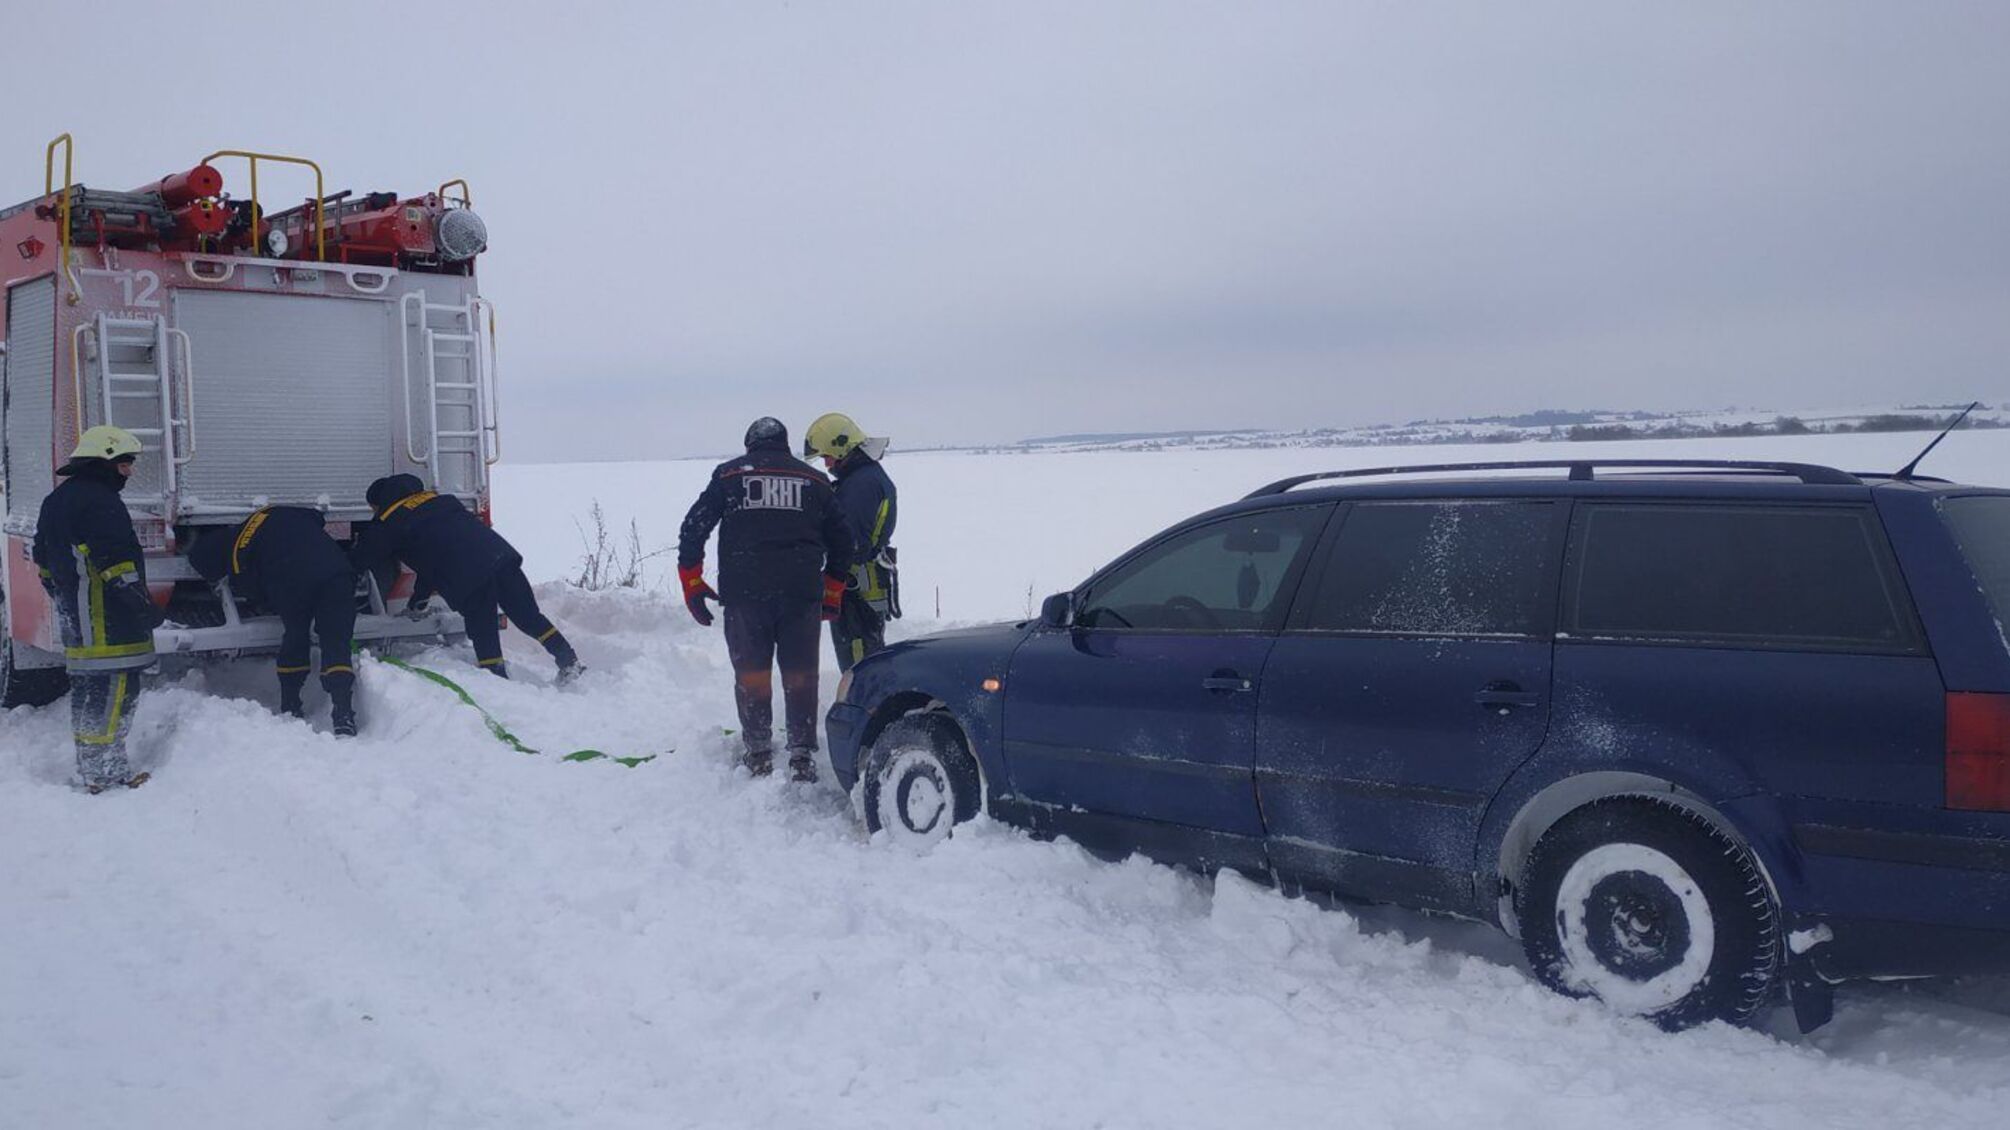 Львівська область: із снігового полону рятувальники звільнили 14 автомобілів, у яких перебувало 34 особи, з них 2 дитини